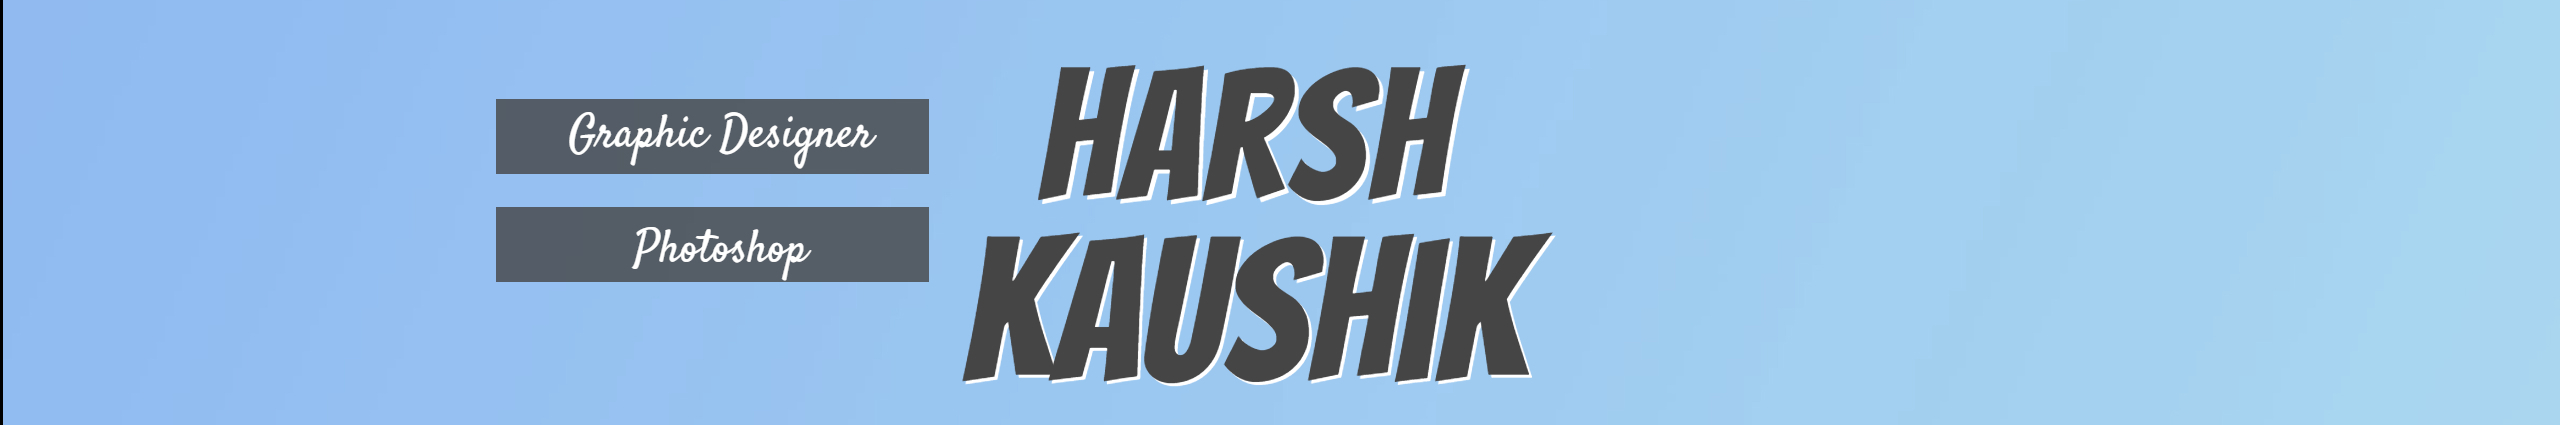 Harsh kaushik's profile banner